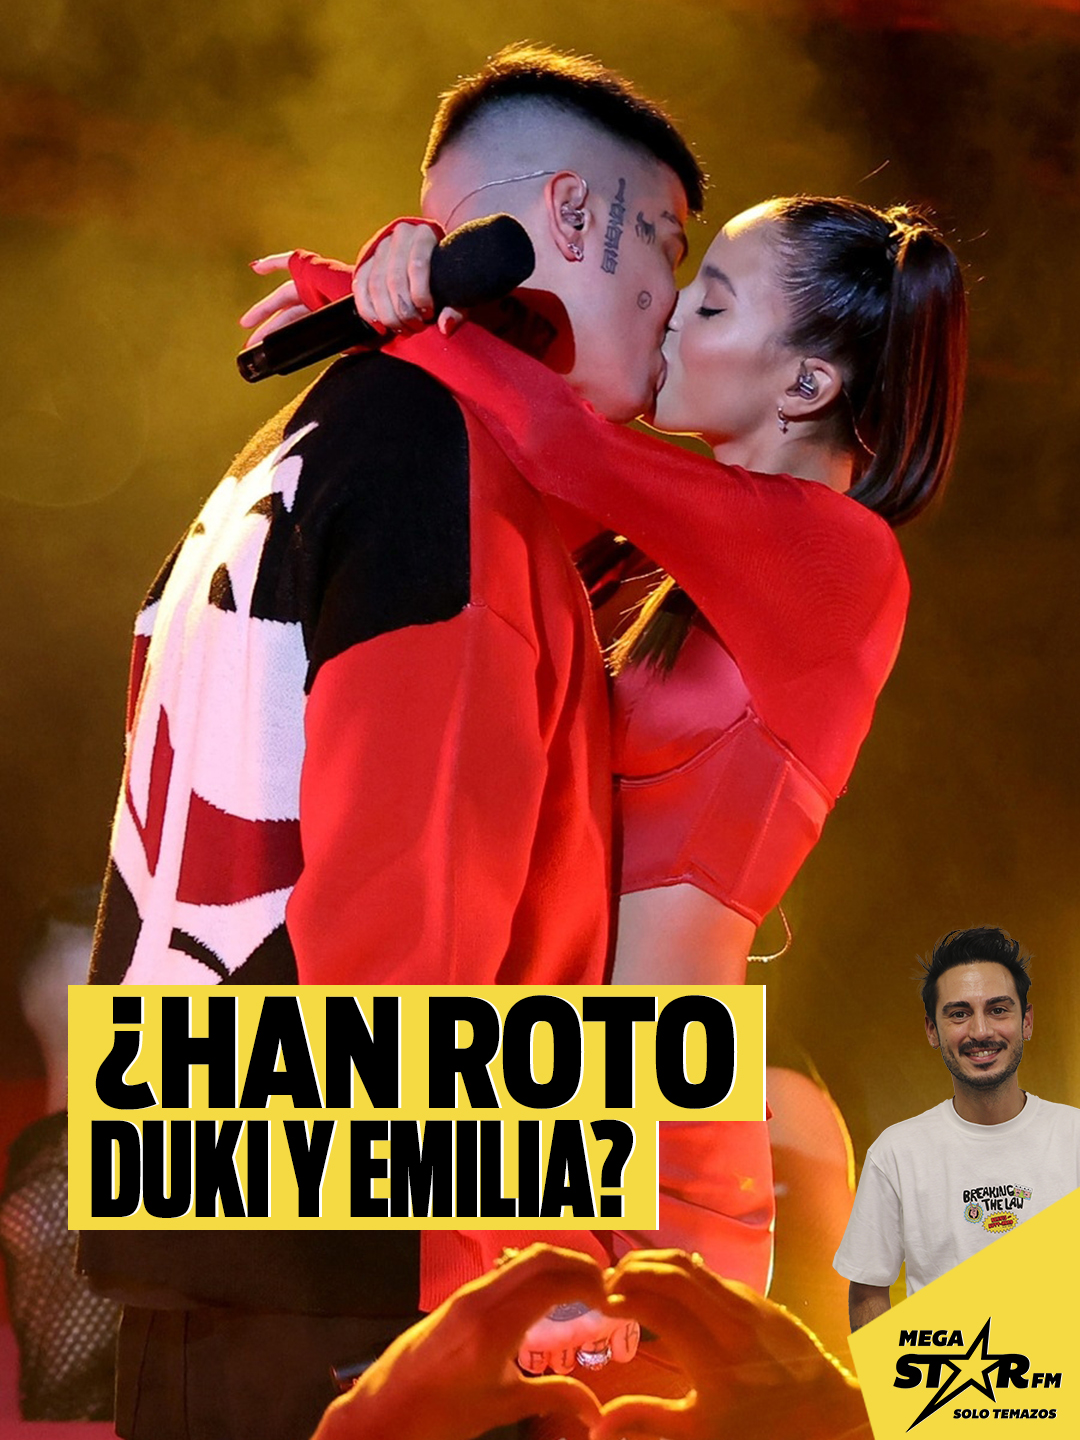 Había rumores, pero confirmamos que Emilia y Duki siguen juntos y siguen siendo una de nuestras parejas de referencia ❤️​❤️​ #Emilia#emiliamernes❤#emiliayduki #duki . . Escucha #JaviAmbiteYLaMegaMañana: 👉en www.MegaStar.FM 👉descargando nuestra app MegaStarFM